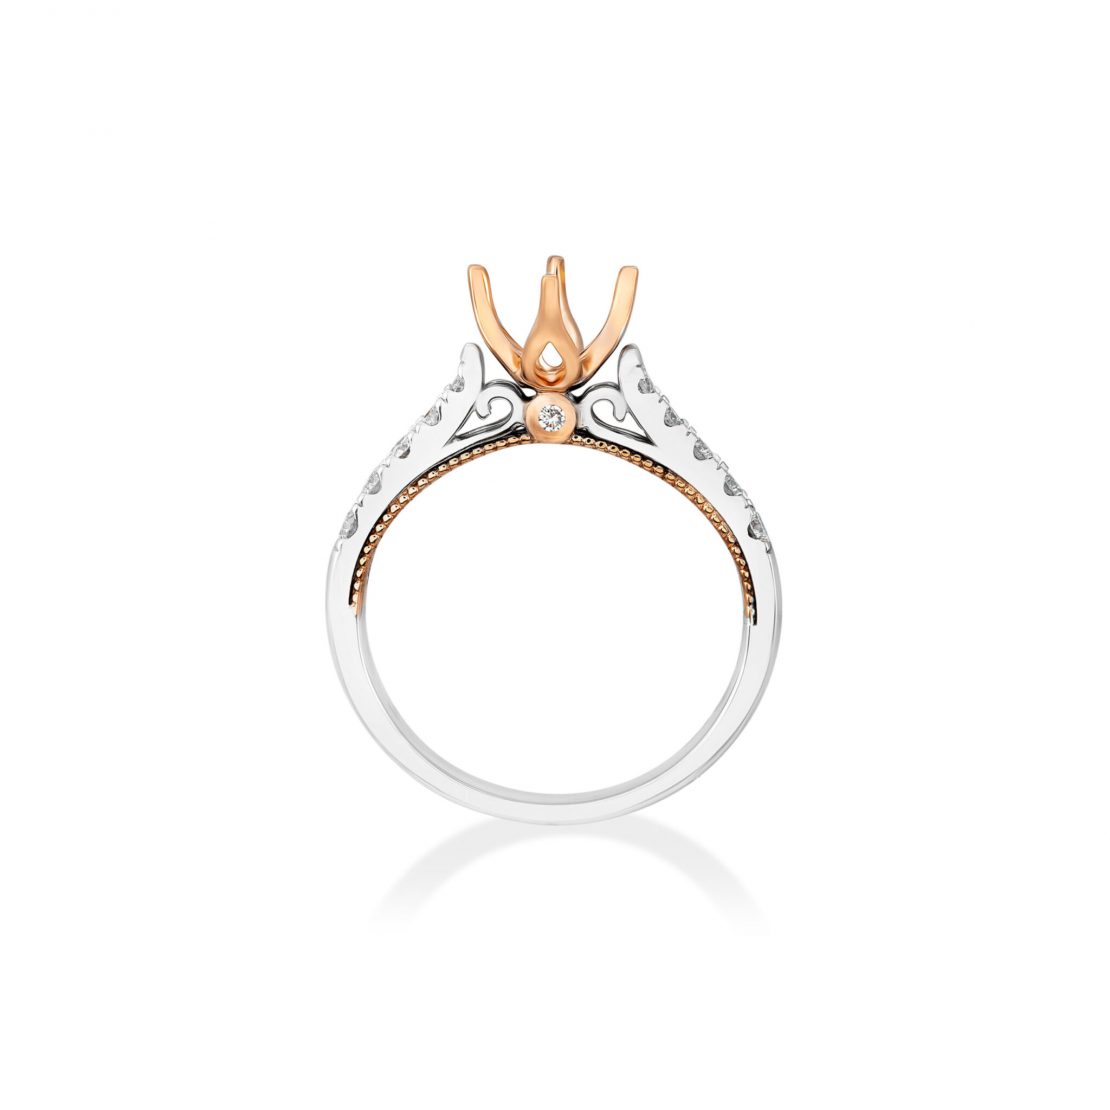 Có nên mua vỏ nhẫn kim cương giá rẻ không?